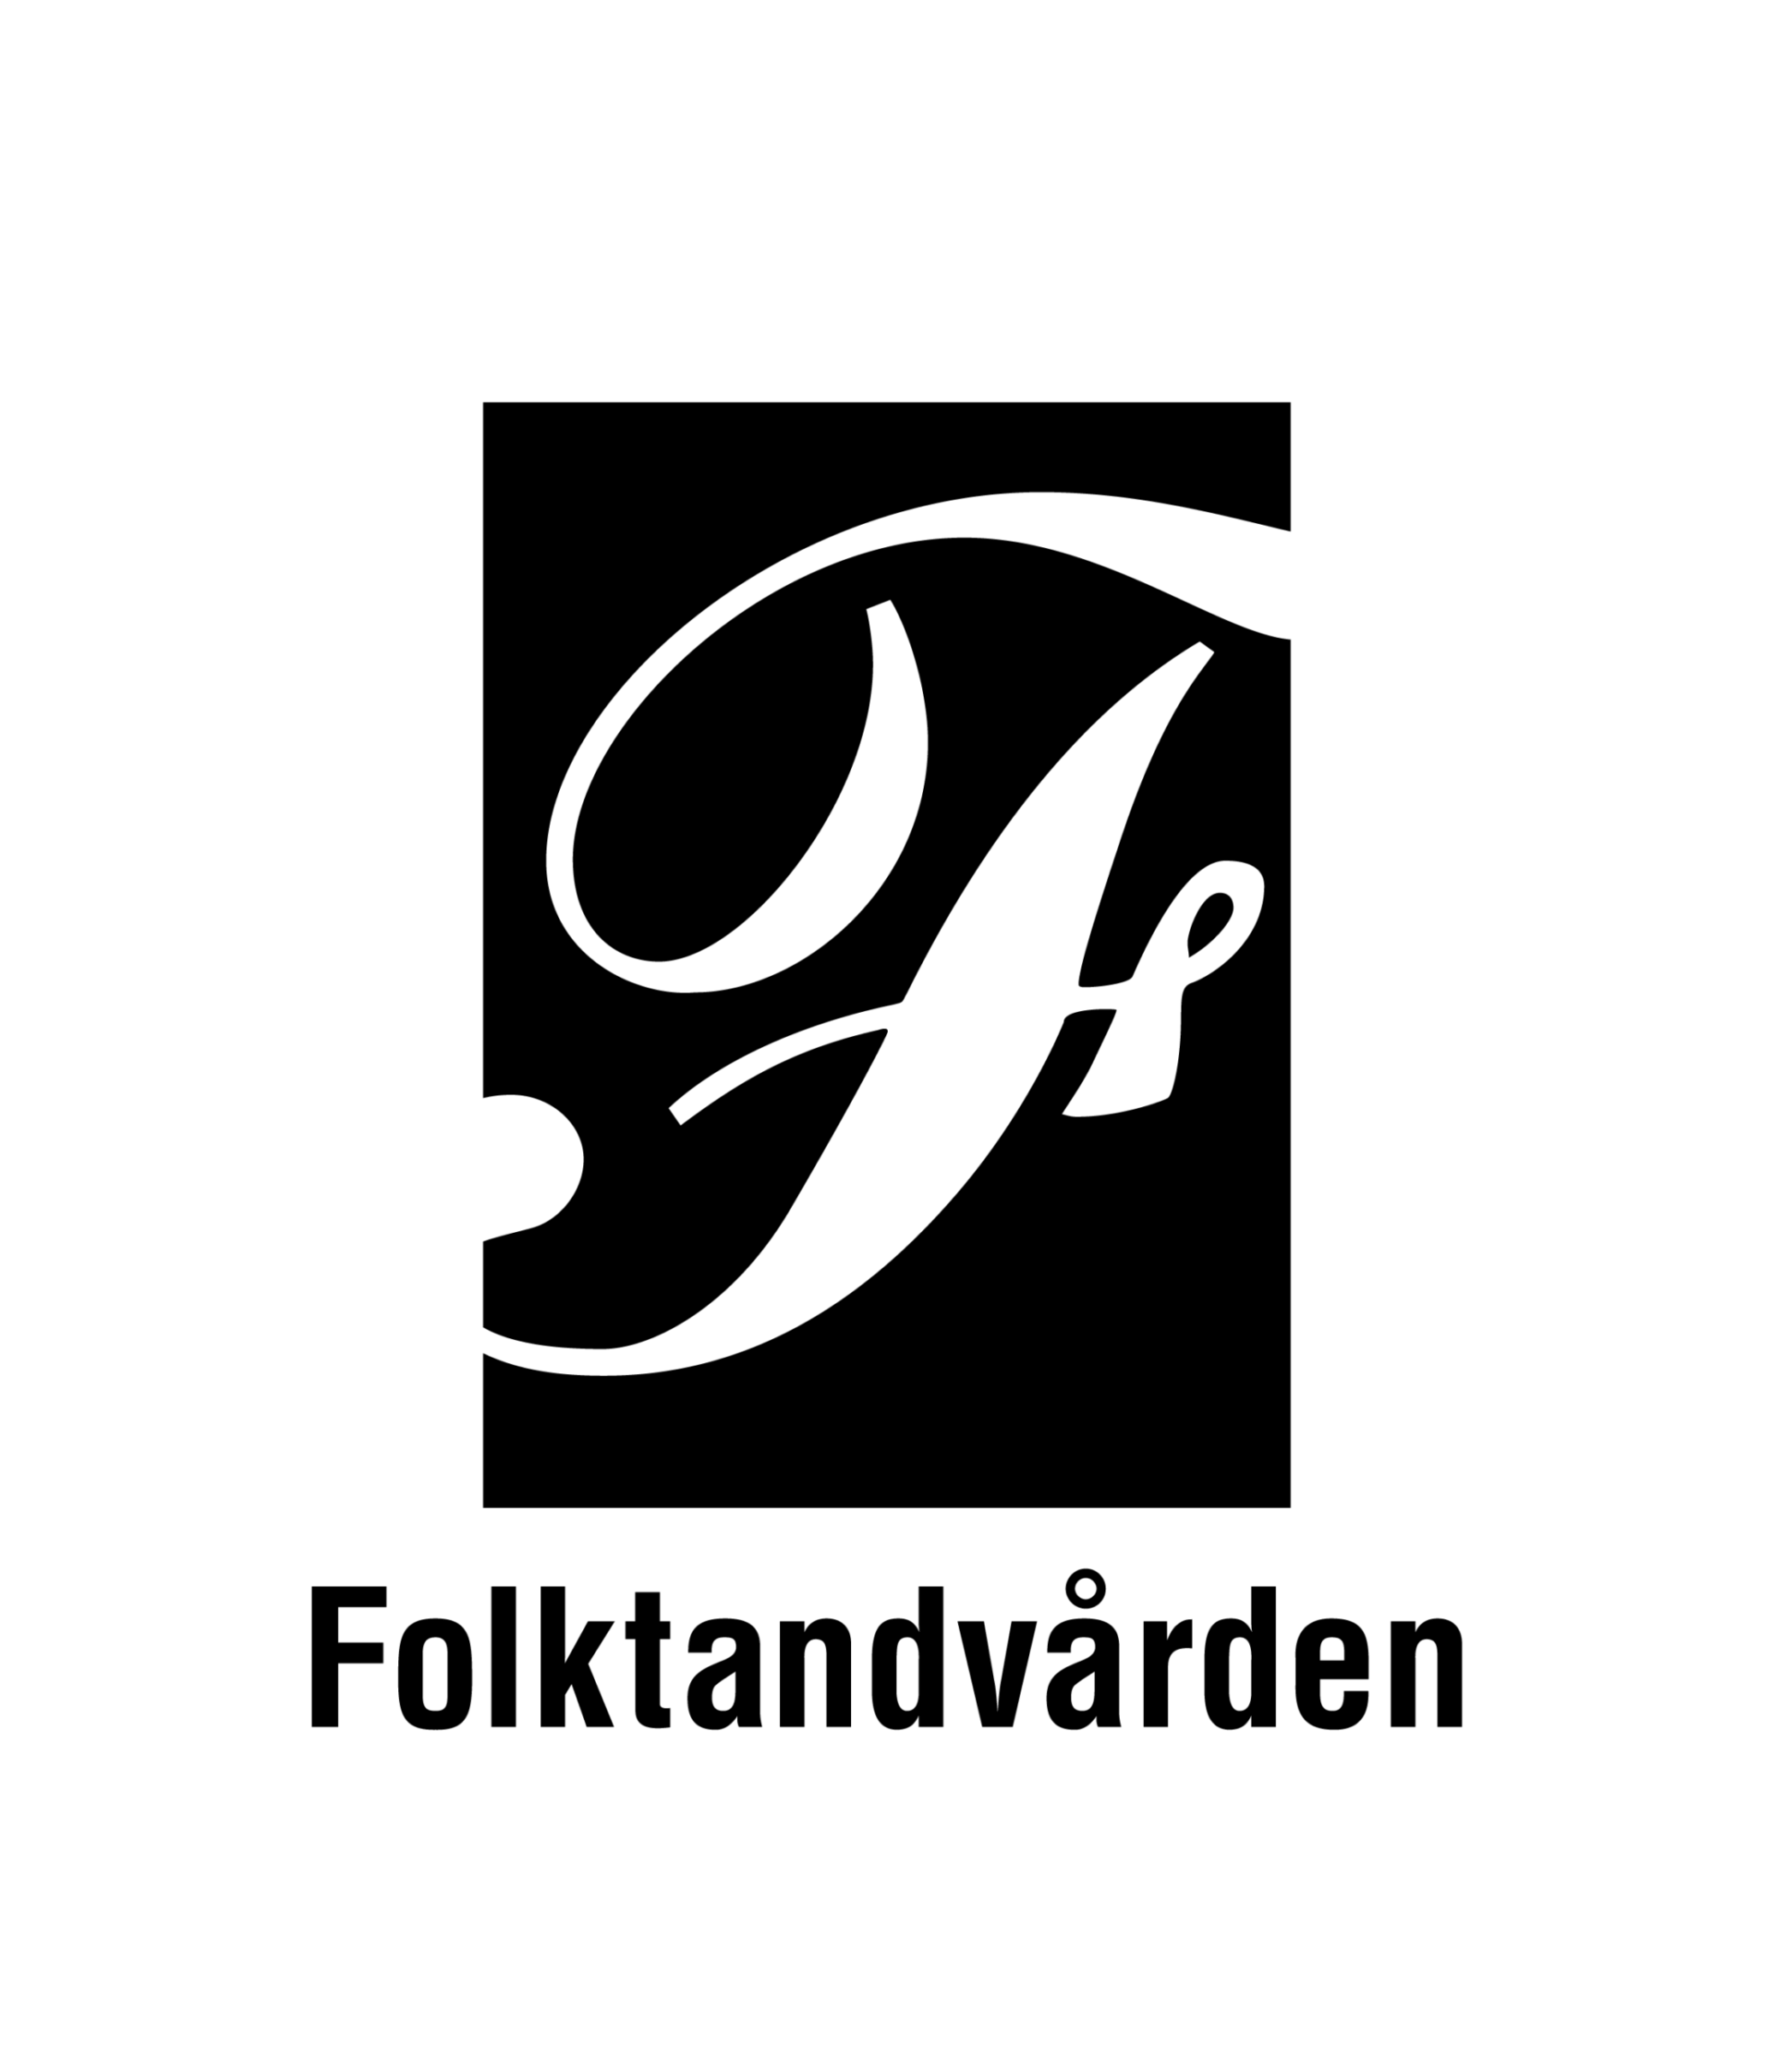 Folktandvården logo by Music in Brands